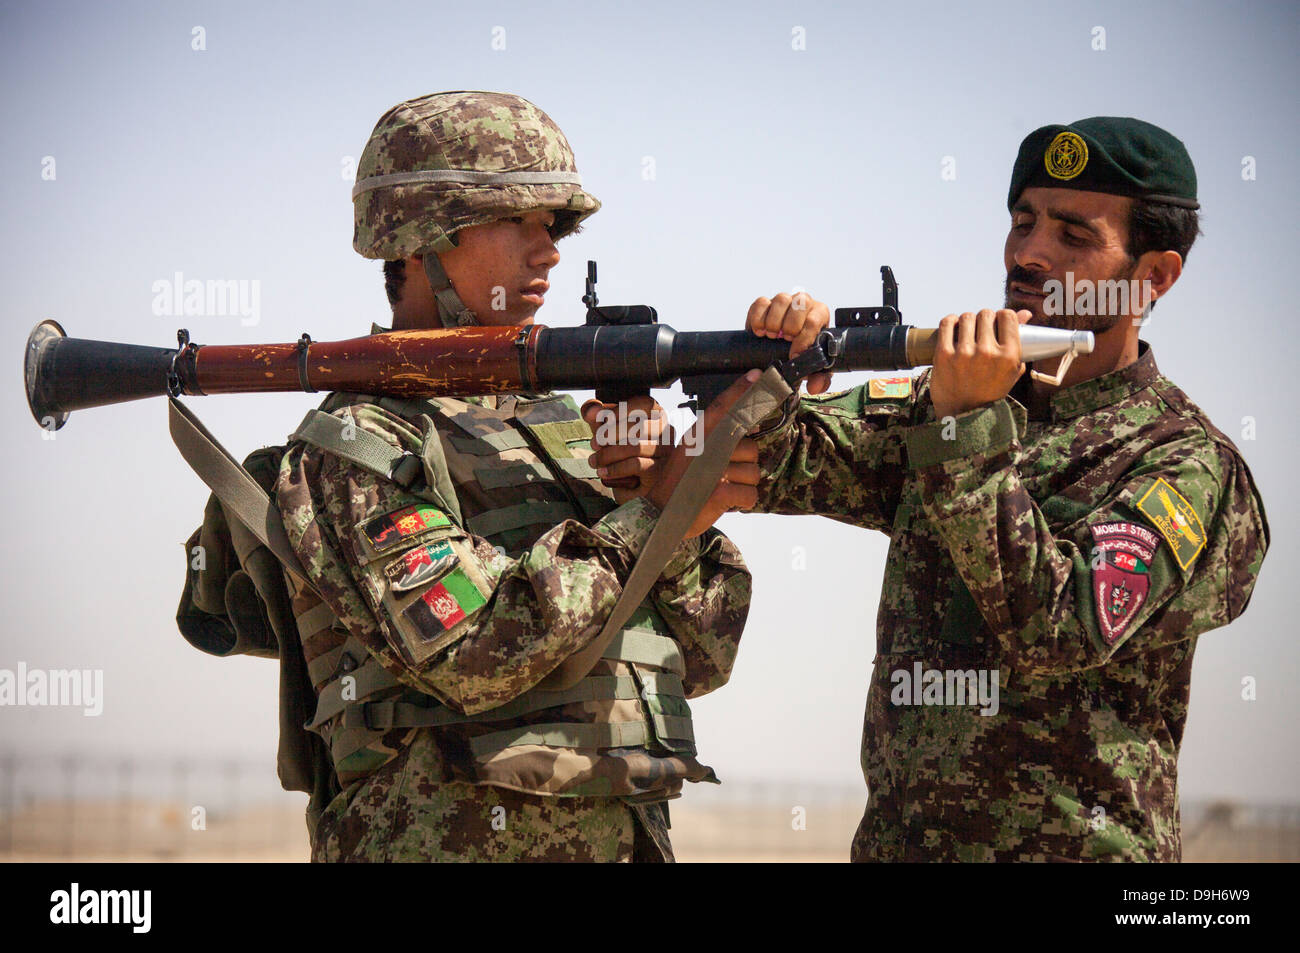 Un soldat de l'Armée nationale afghane avec le kandak d'opérations spéciales se prépare à tirer un RPG-7 grenade launcher au cours d'un exercice de tir réel 20 mai 2013 au Camp de Shorabak, Afghanistan. Banque D'Images